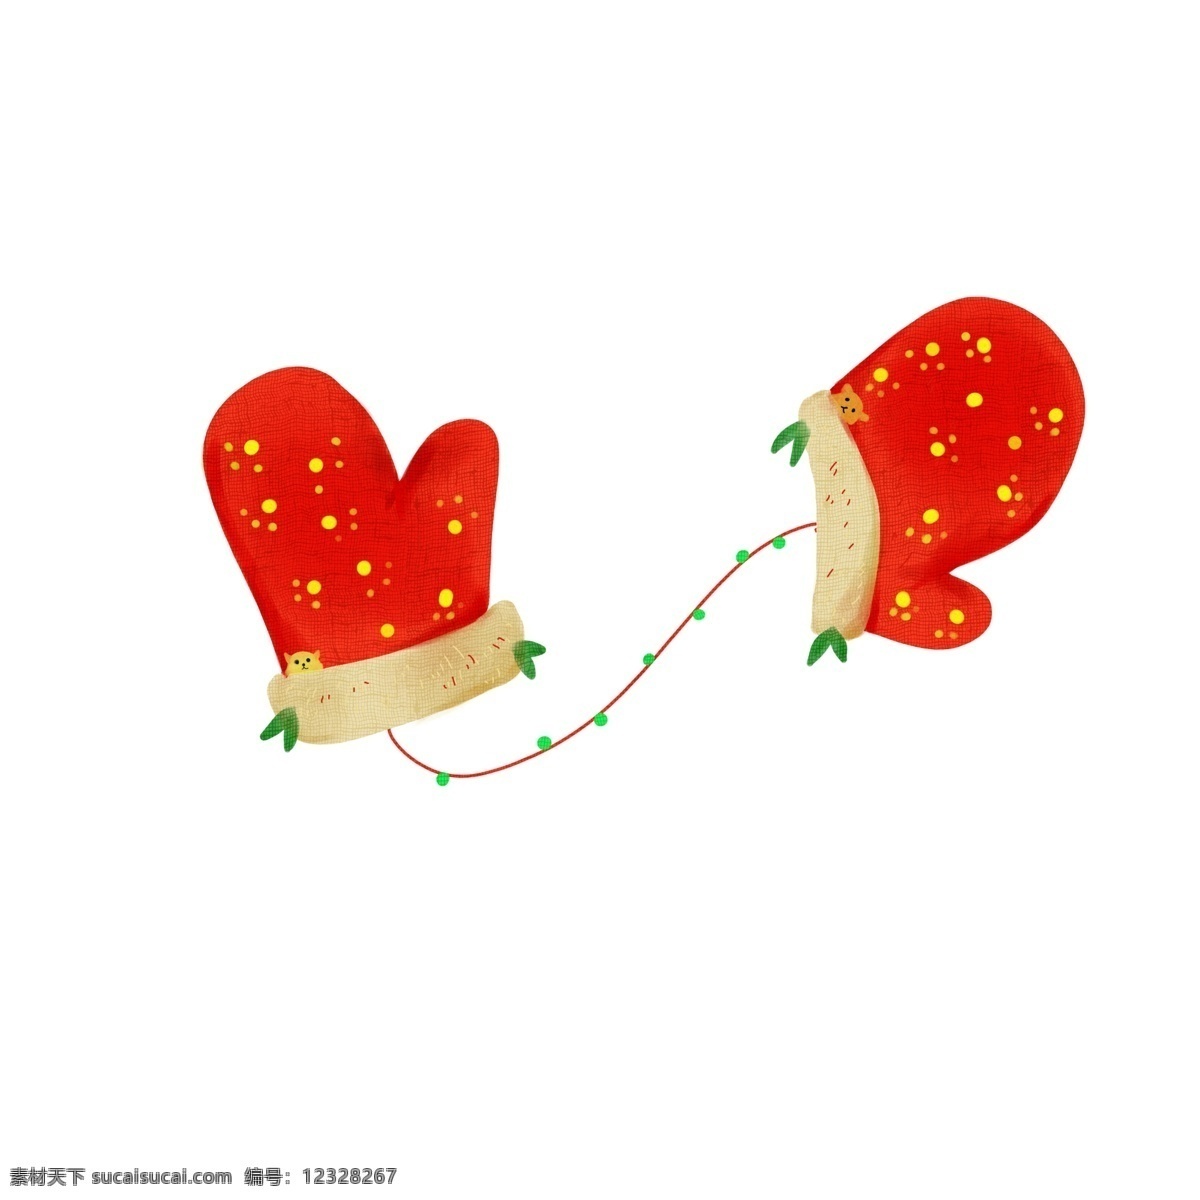 卡通 冬季 小 物 手绘 插画 手套 圣诞手套 装饰物 寒冷 圣诞节 寒冬 手绘插画 可爱 红色 叶子